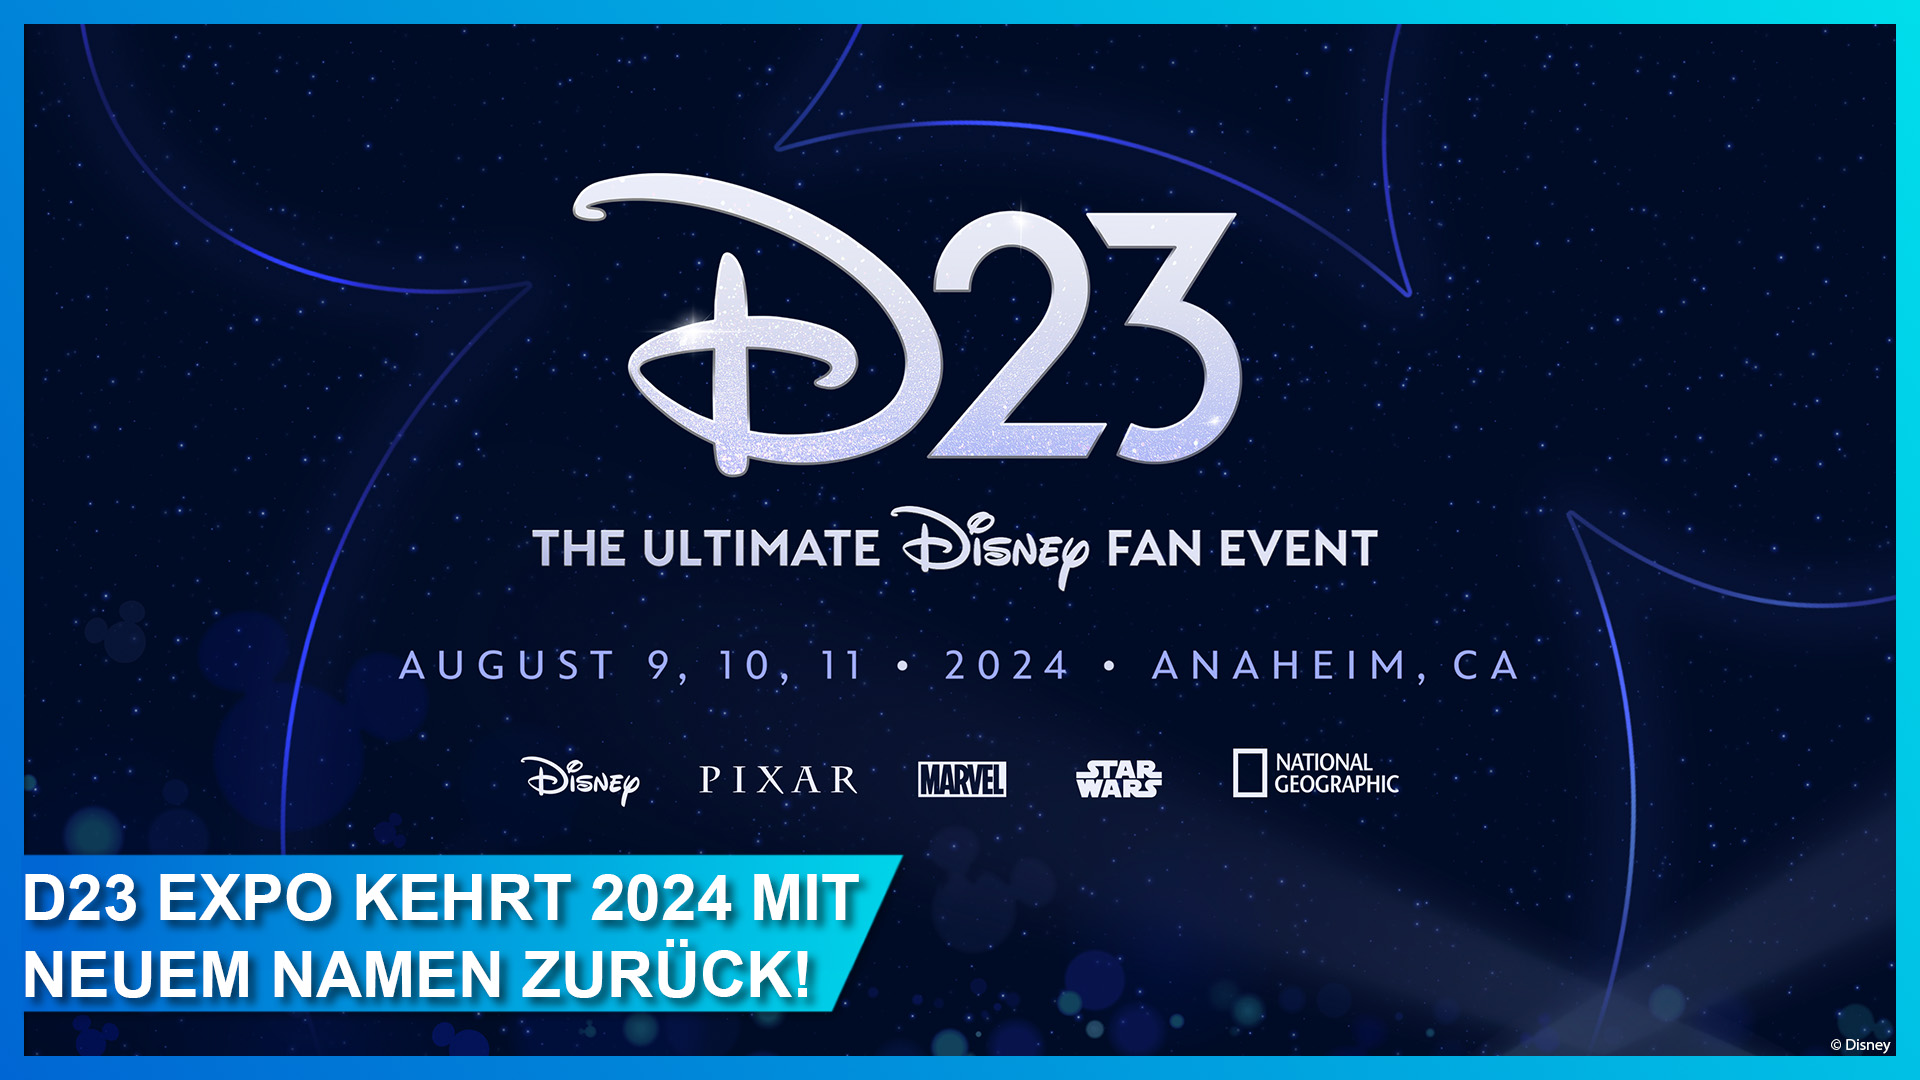 D23 Expo 2024: The Ultimate Disney Fan Event vom 9.-11. August in Anaheim, Kalifornien! Tickets im Verkauf ab dem 26. März